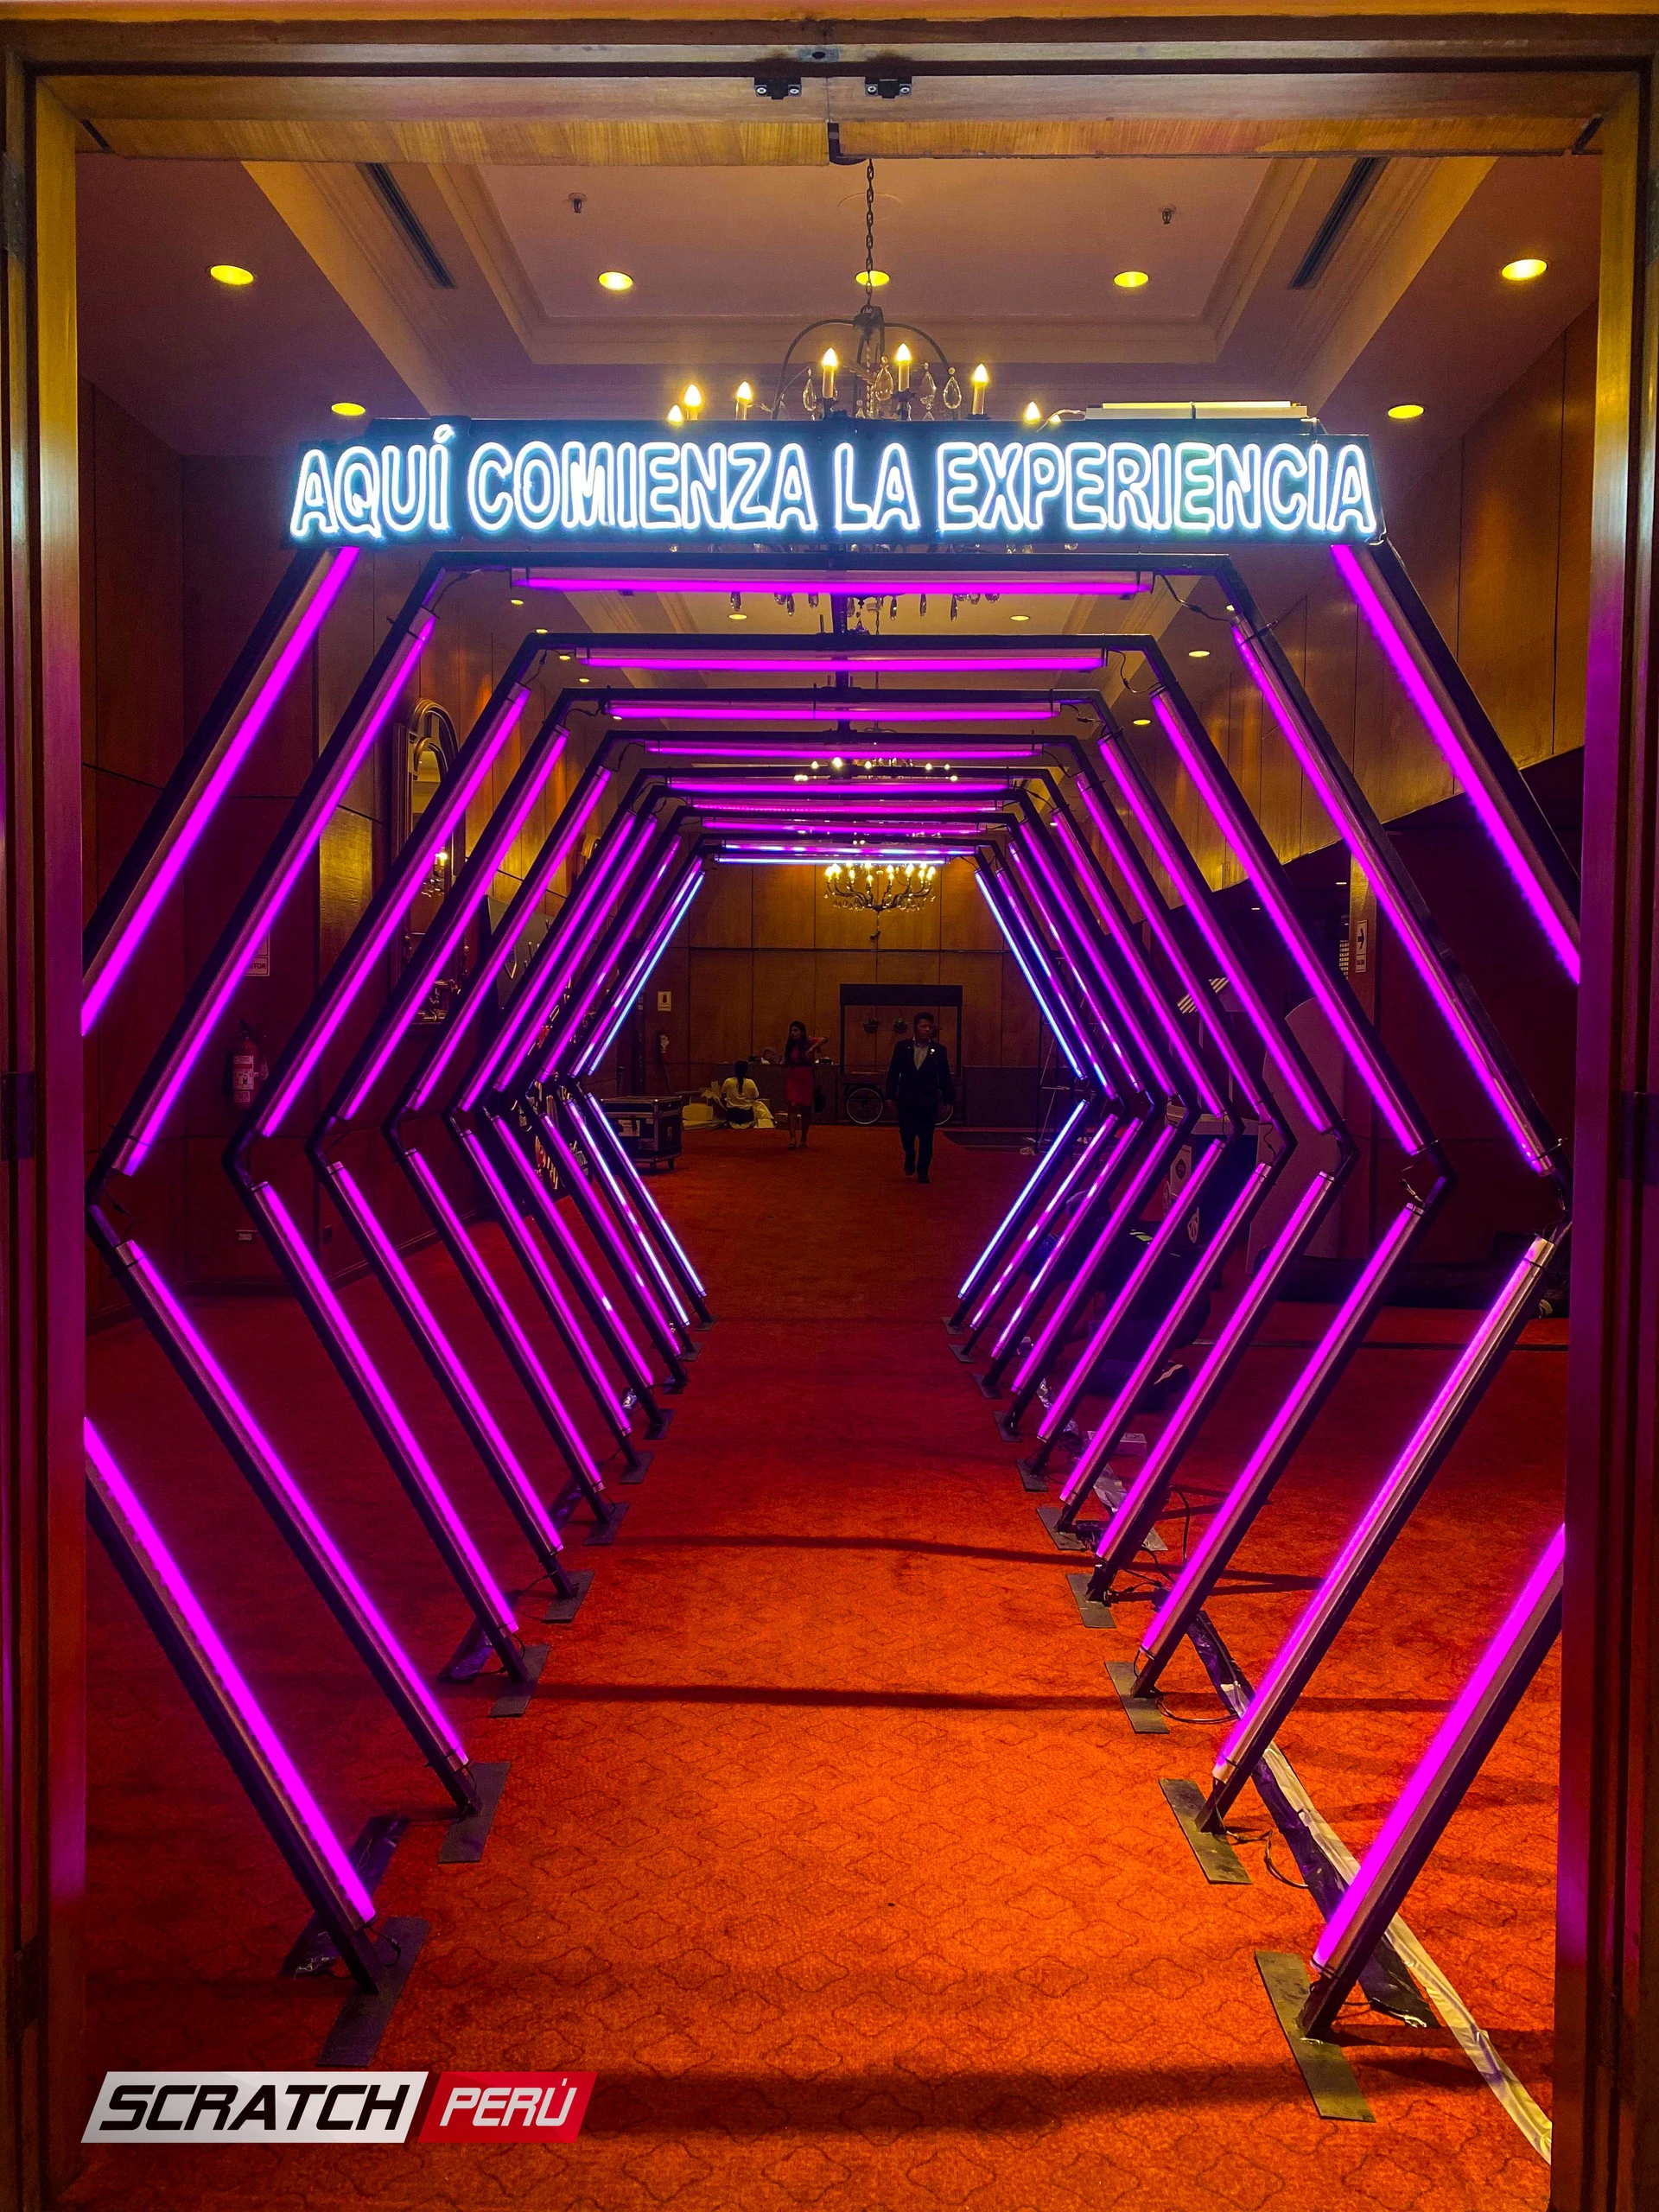 Túnel LED hexagonal violeta: Acceso elegante al área de conversiones en el Hotel Westin, resaltando la exclusividad del evento. - Túnel hexagonal led - scratch perú.